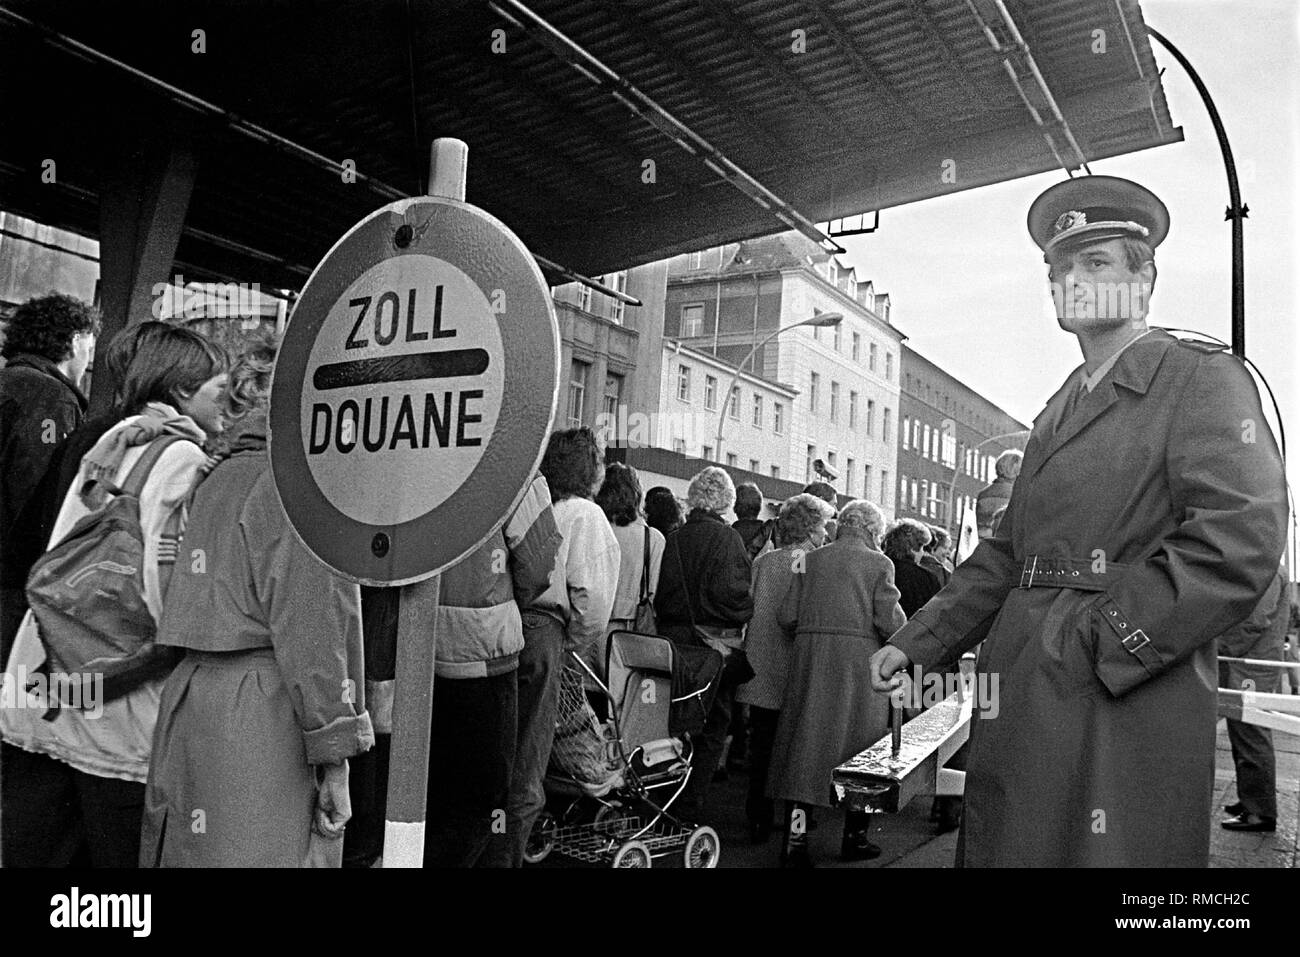 Am Grenzübergang Invalidenstraße in Ost Berlin, Bürger ziehen hinter einem Grenzsoldaten der DDR in den westlichen Teil der Stadt nach dem Fall der Berliner Mauer. Stockfoto